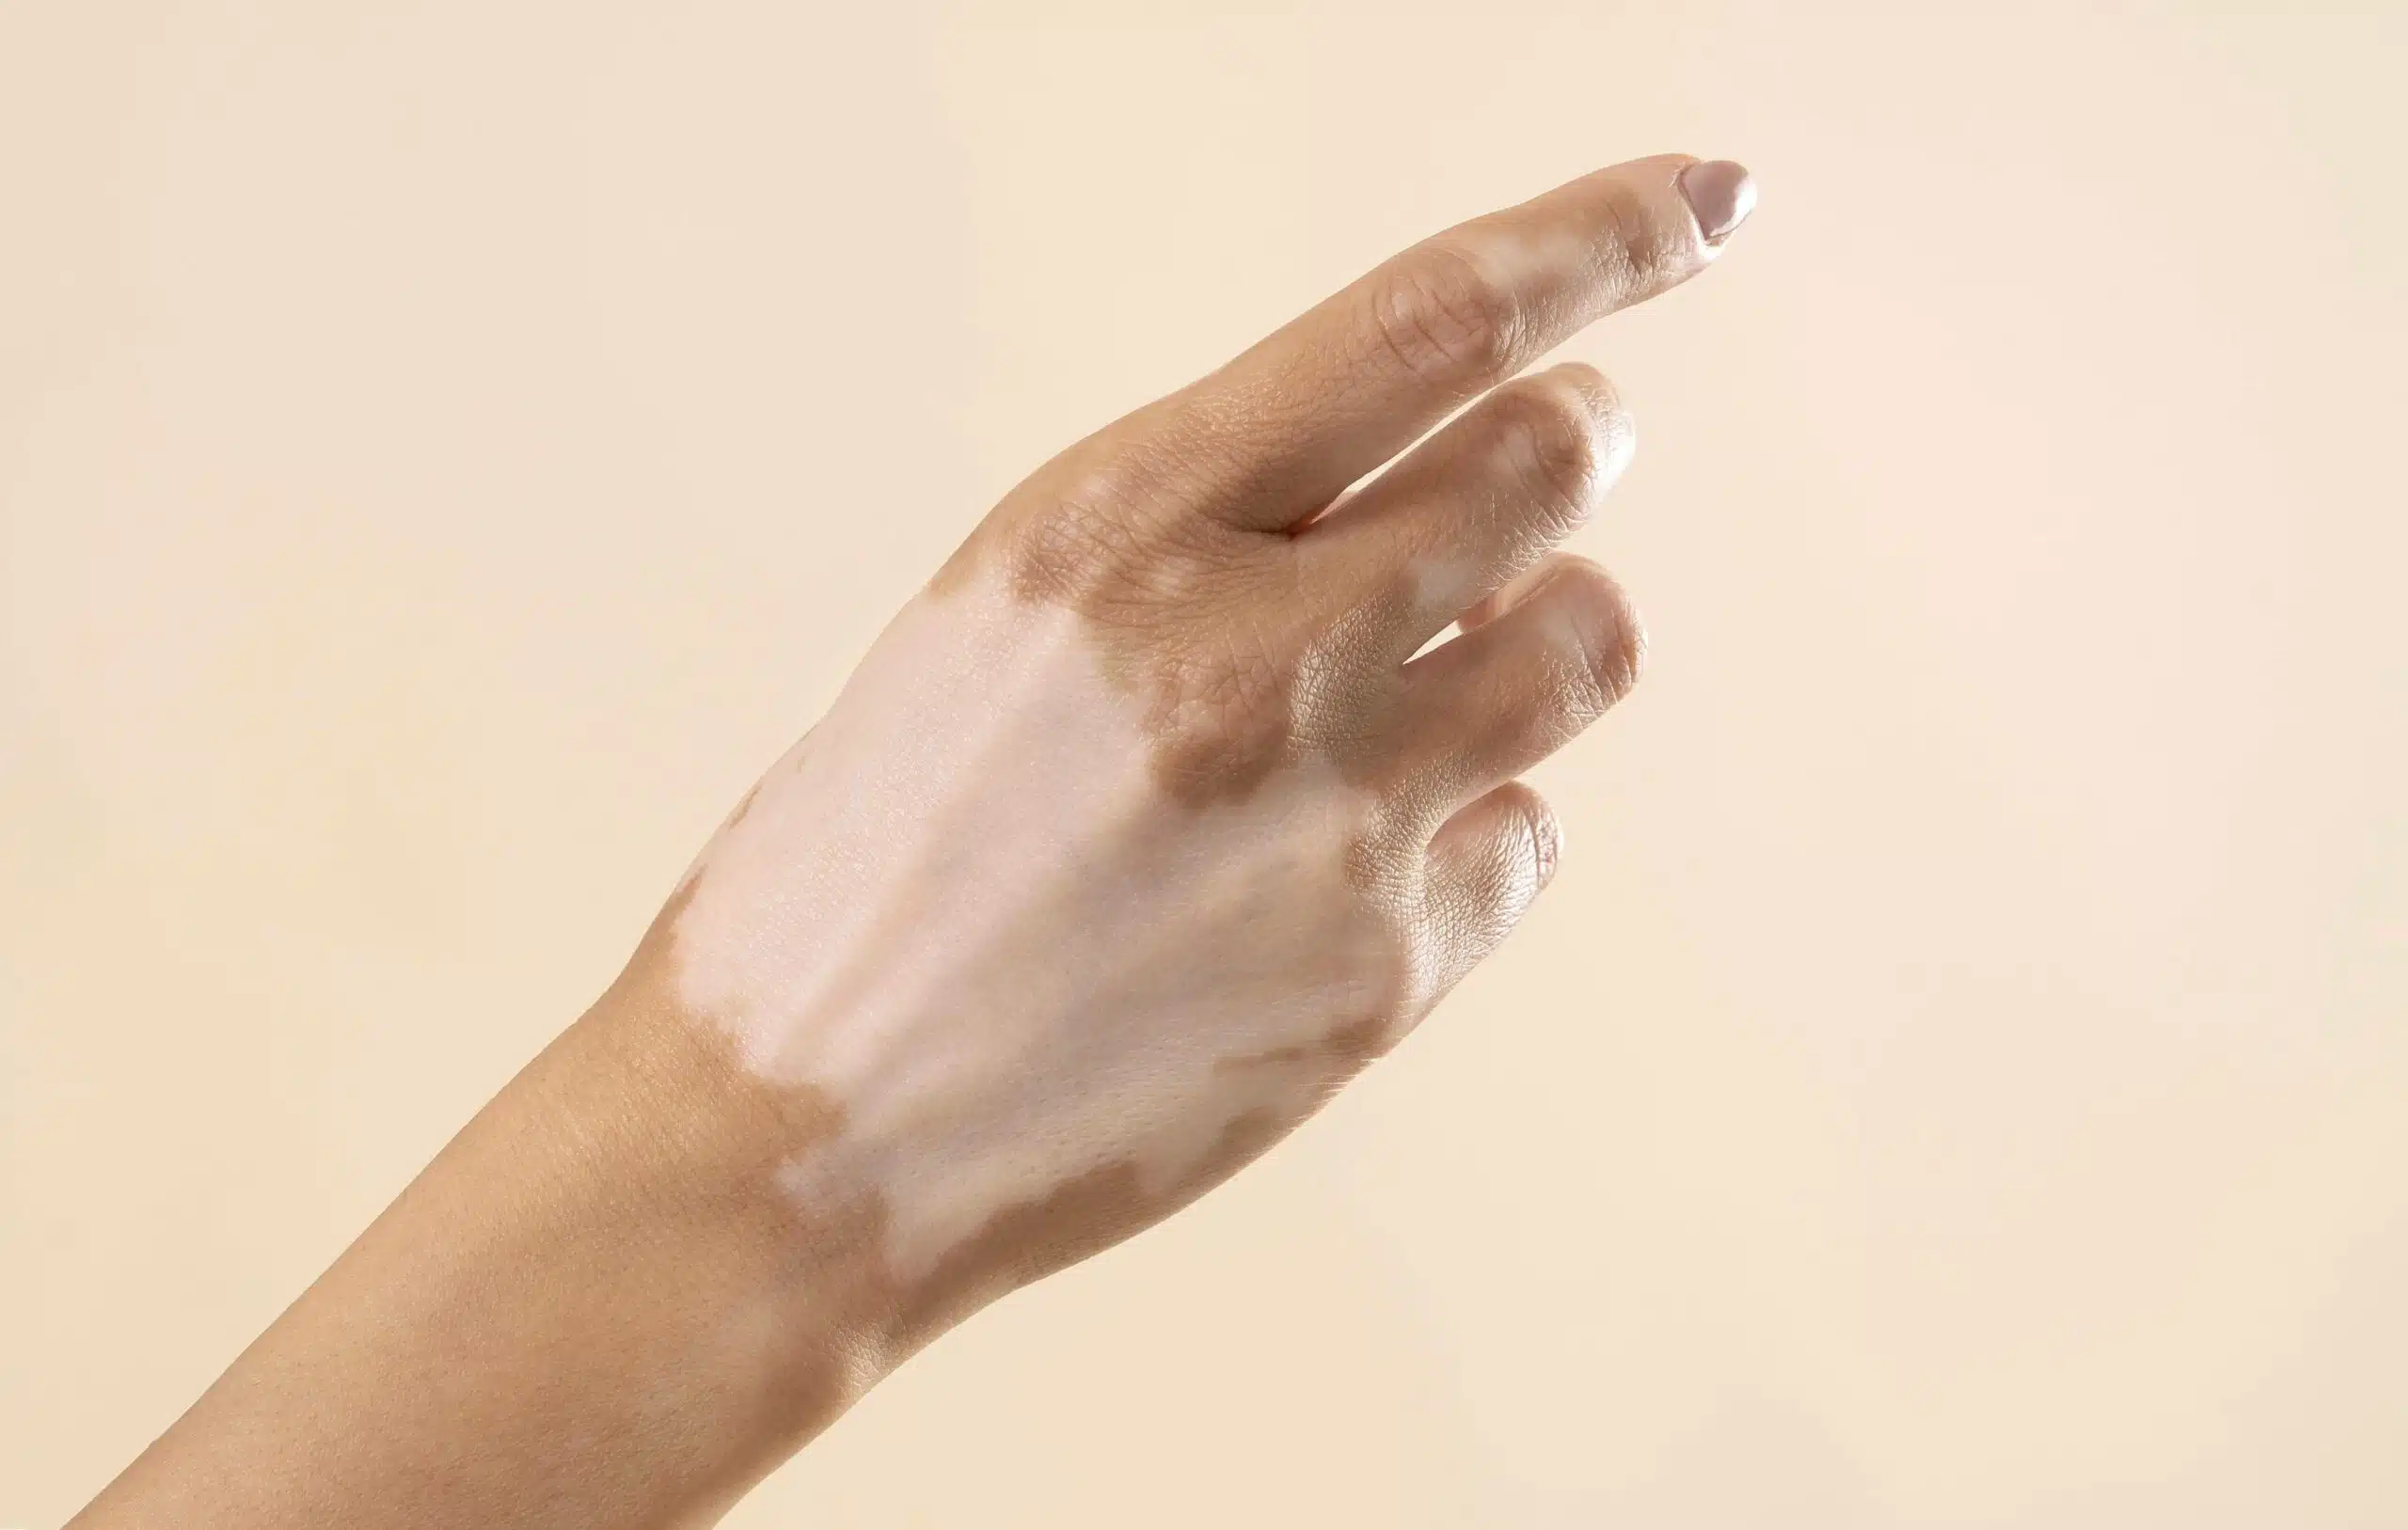 Pictures of Vitiligo